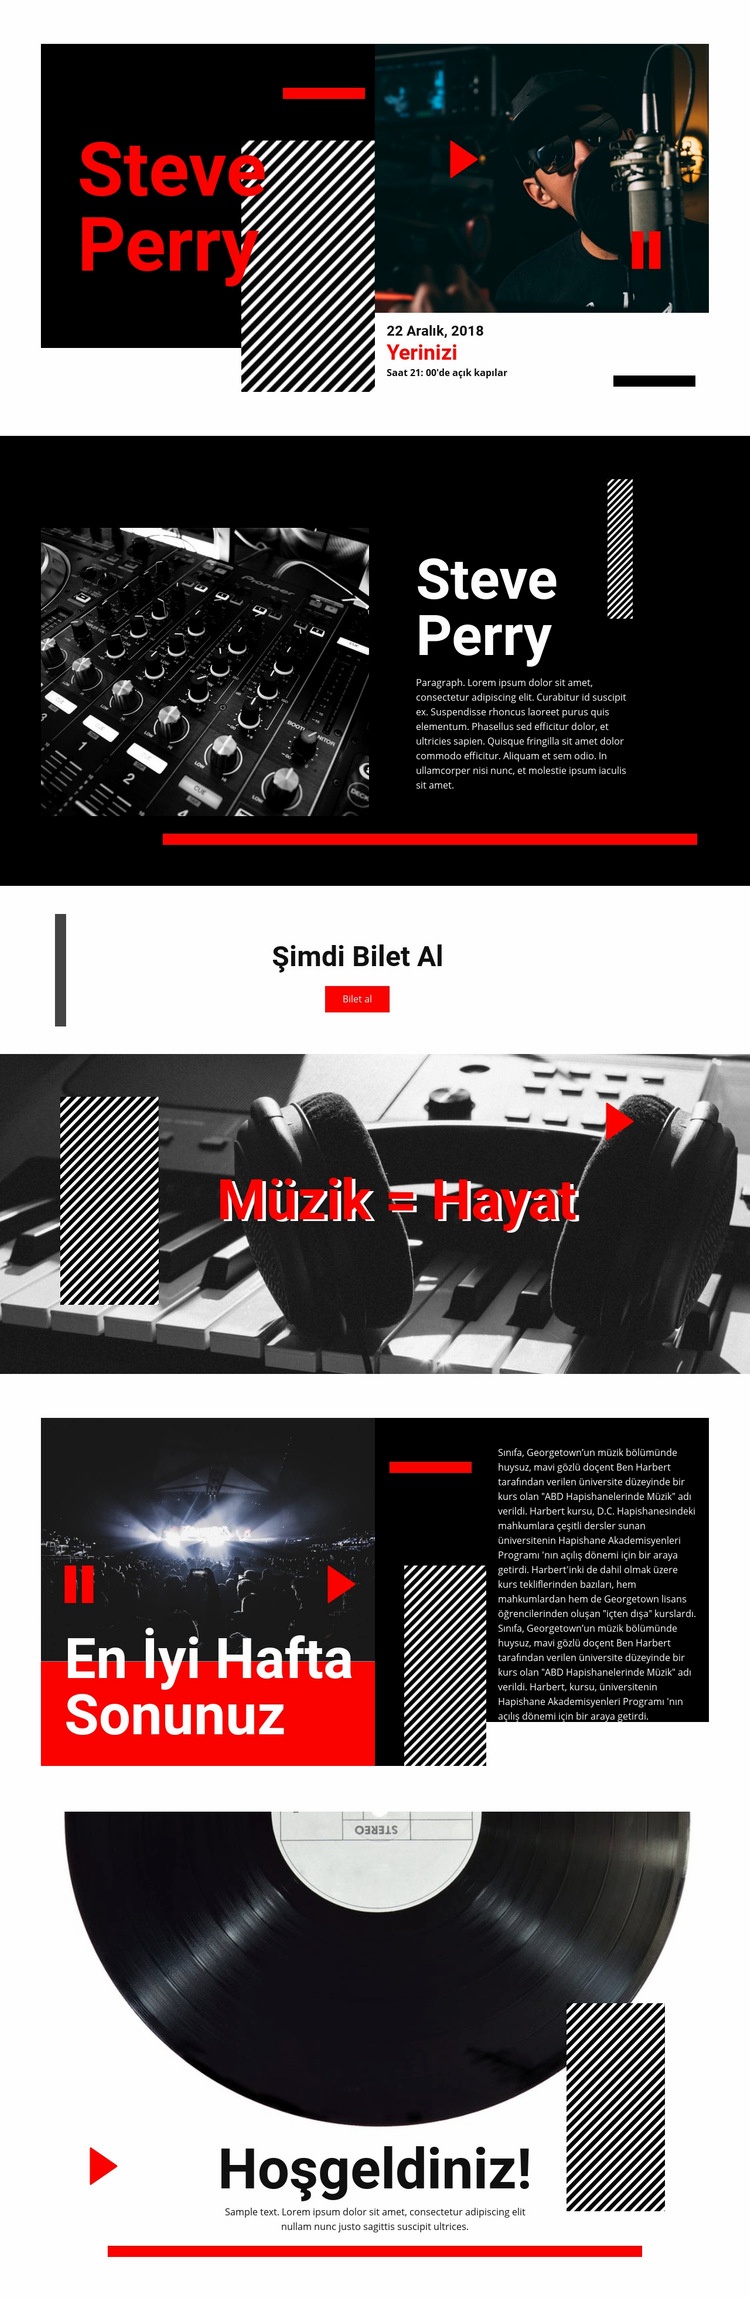 En kaliteli müzik Web sitesi tasarımı